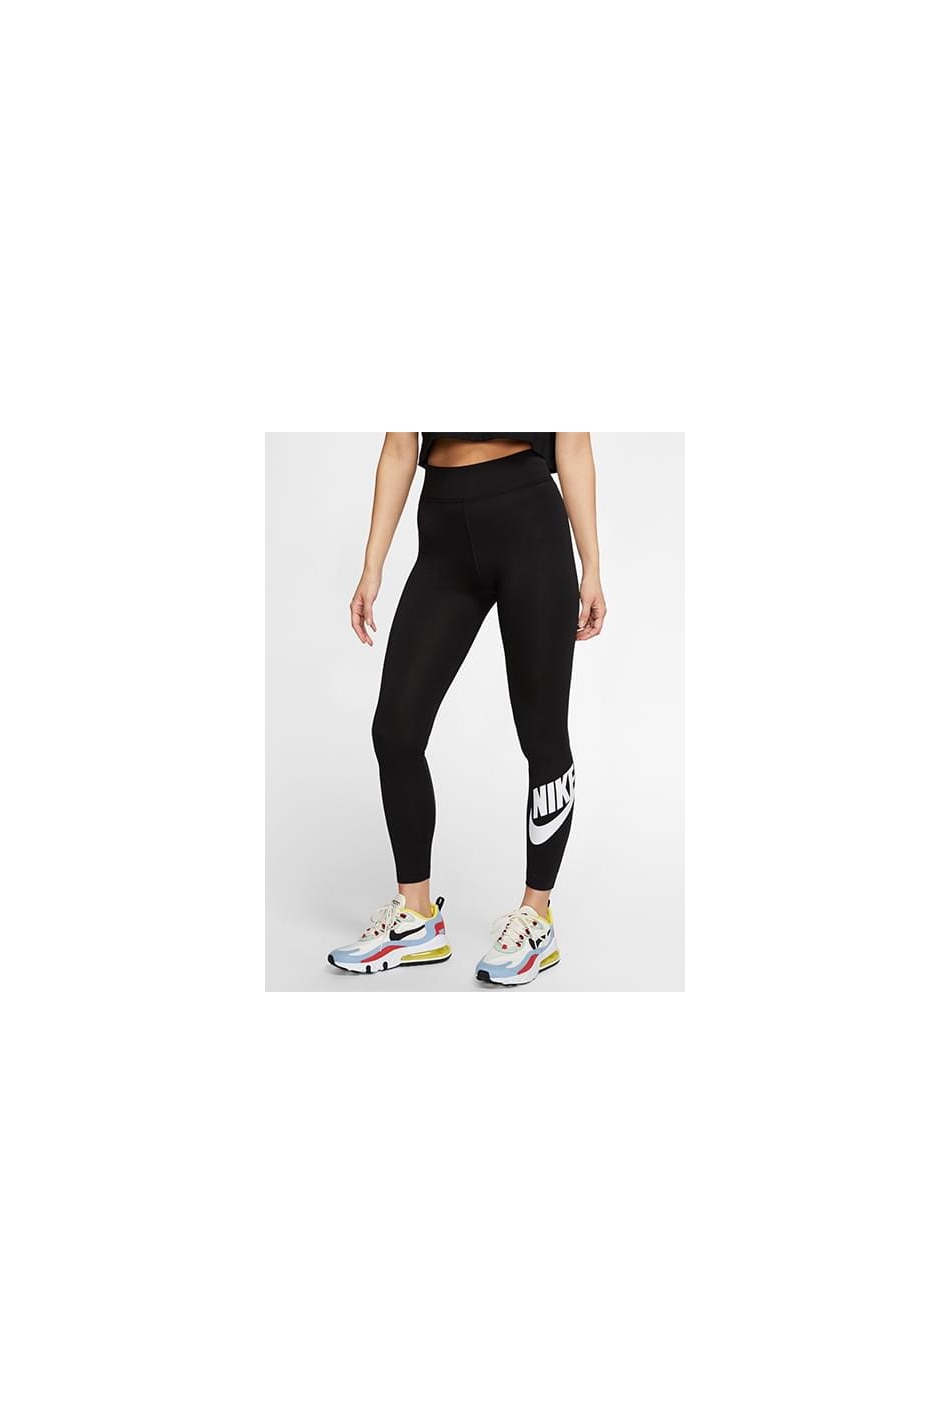 Nike fekete sport leggings  Női ruházat - Sportruházat - Alsó